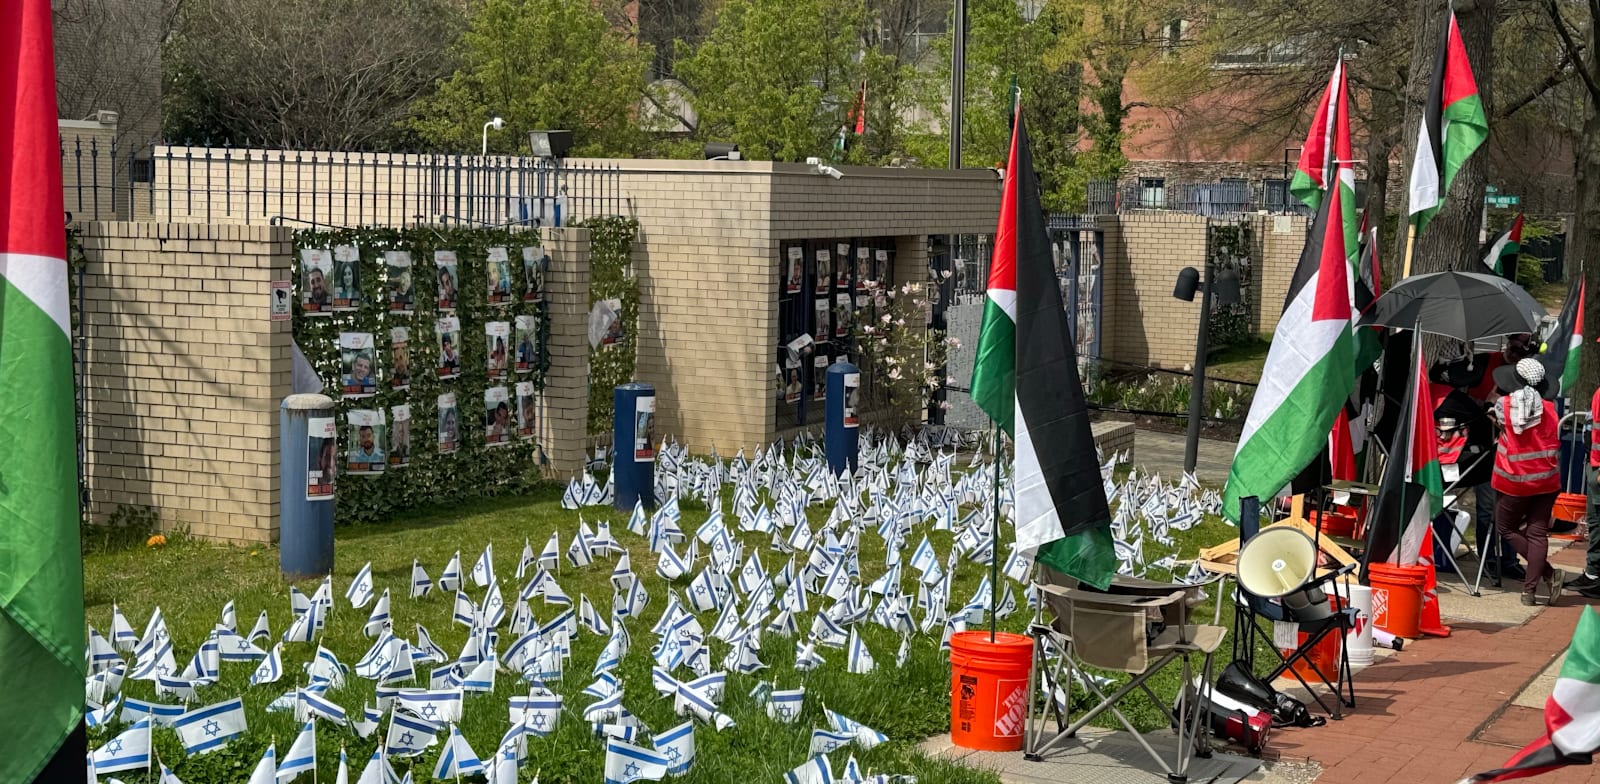 דגלים פלסטיניים בחזית שגרירות ישראל בוושינגטון, ומגאפונים פולטים את יבבות הסירנות ללא הפסקה / צילום: יואב קרני